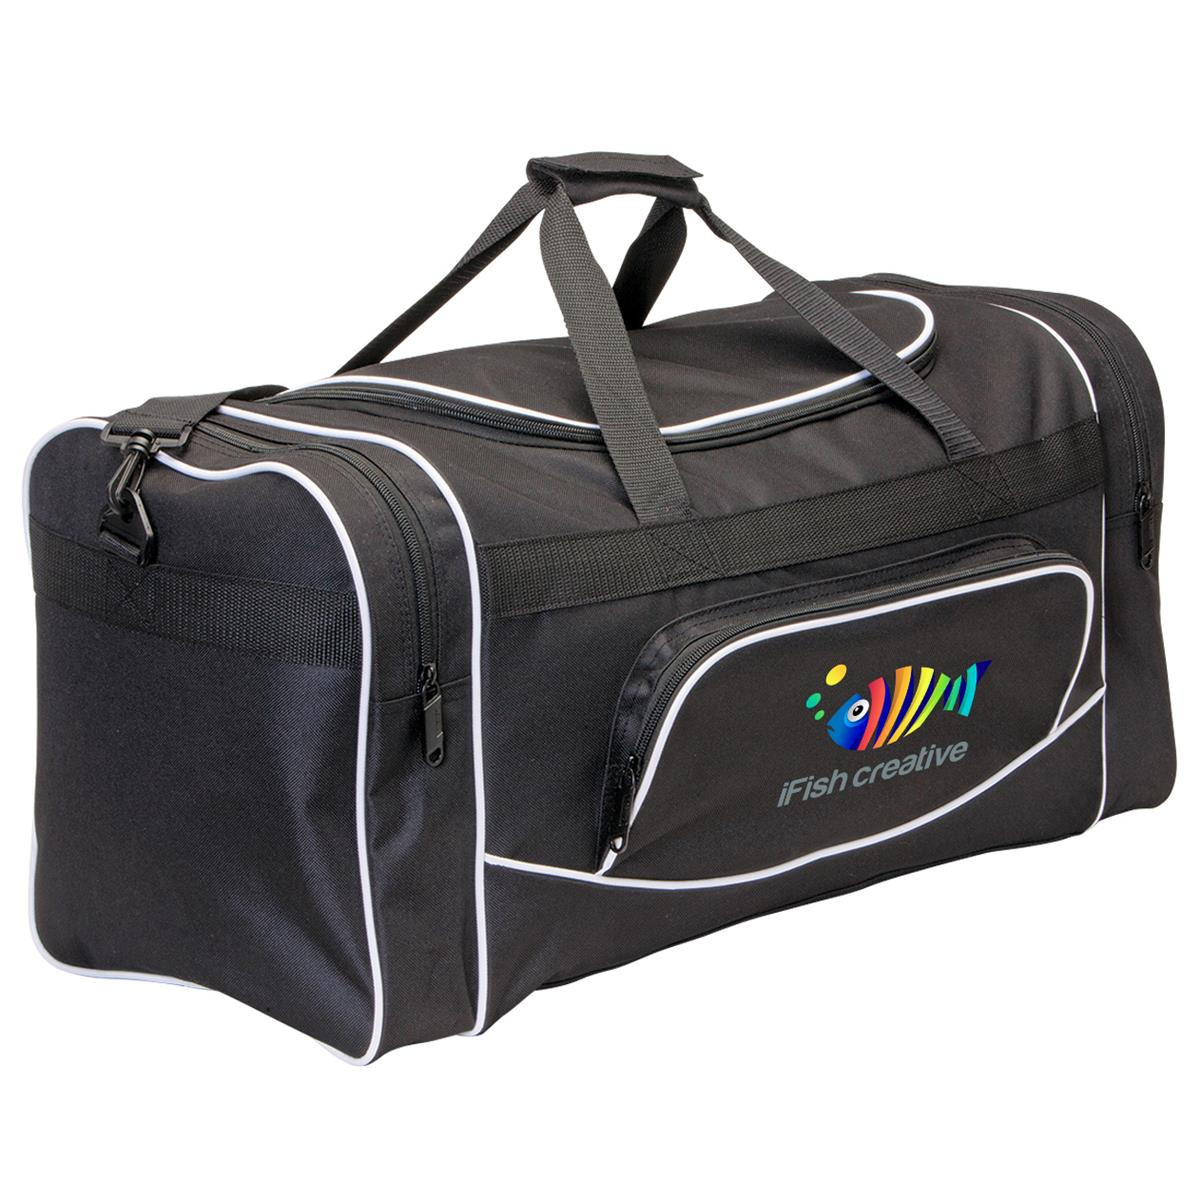 Buy Legend Smart Pack Cricket Kit Bag Online